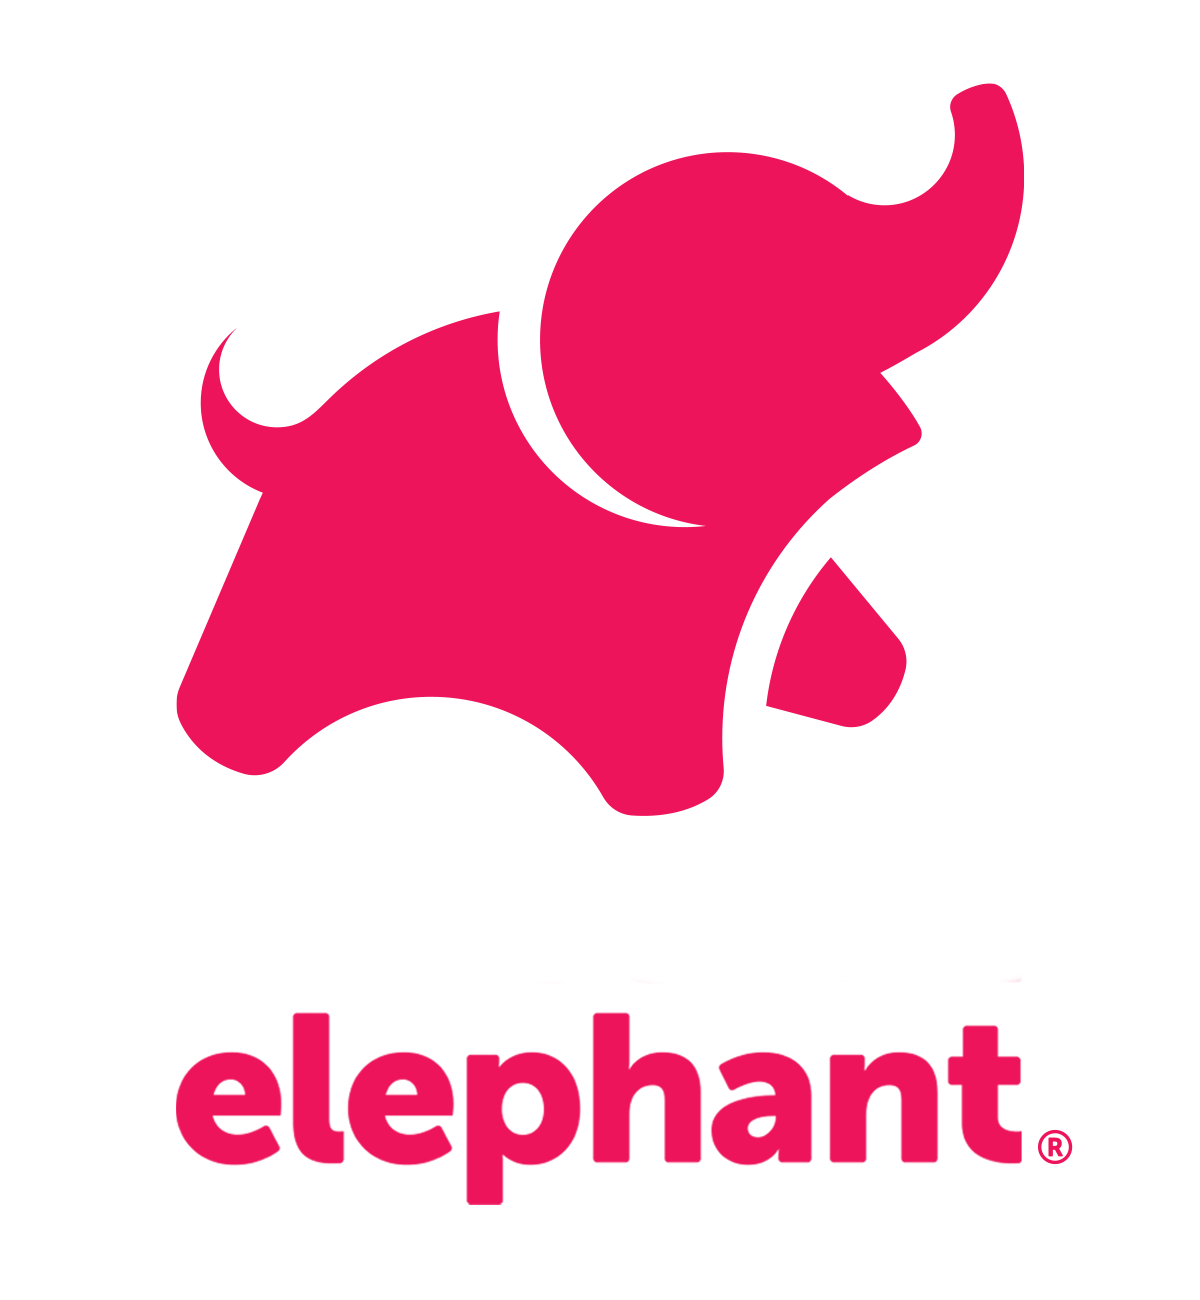 the social elephant